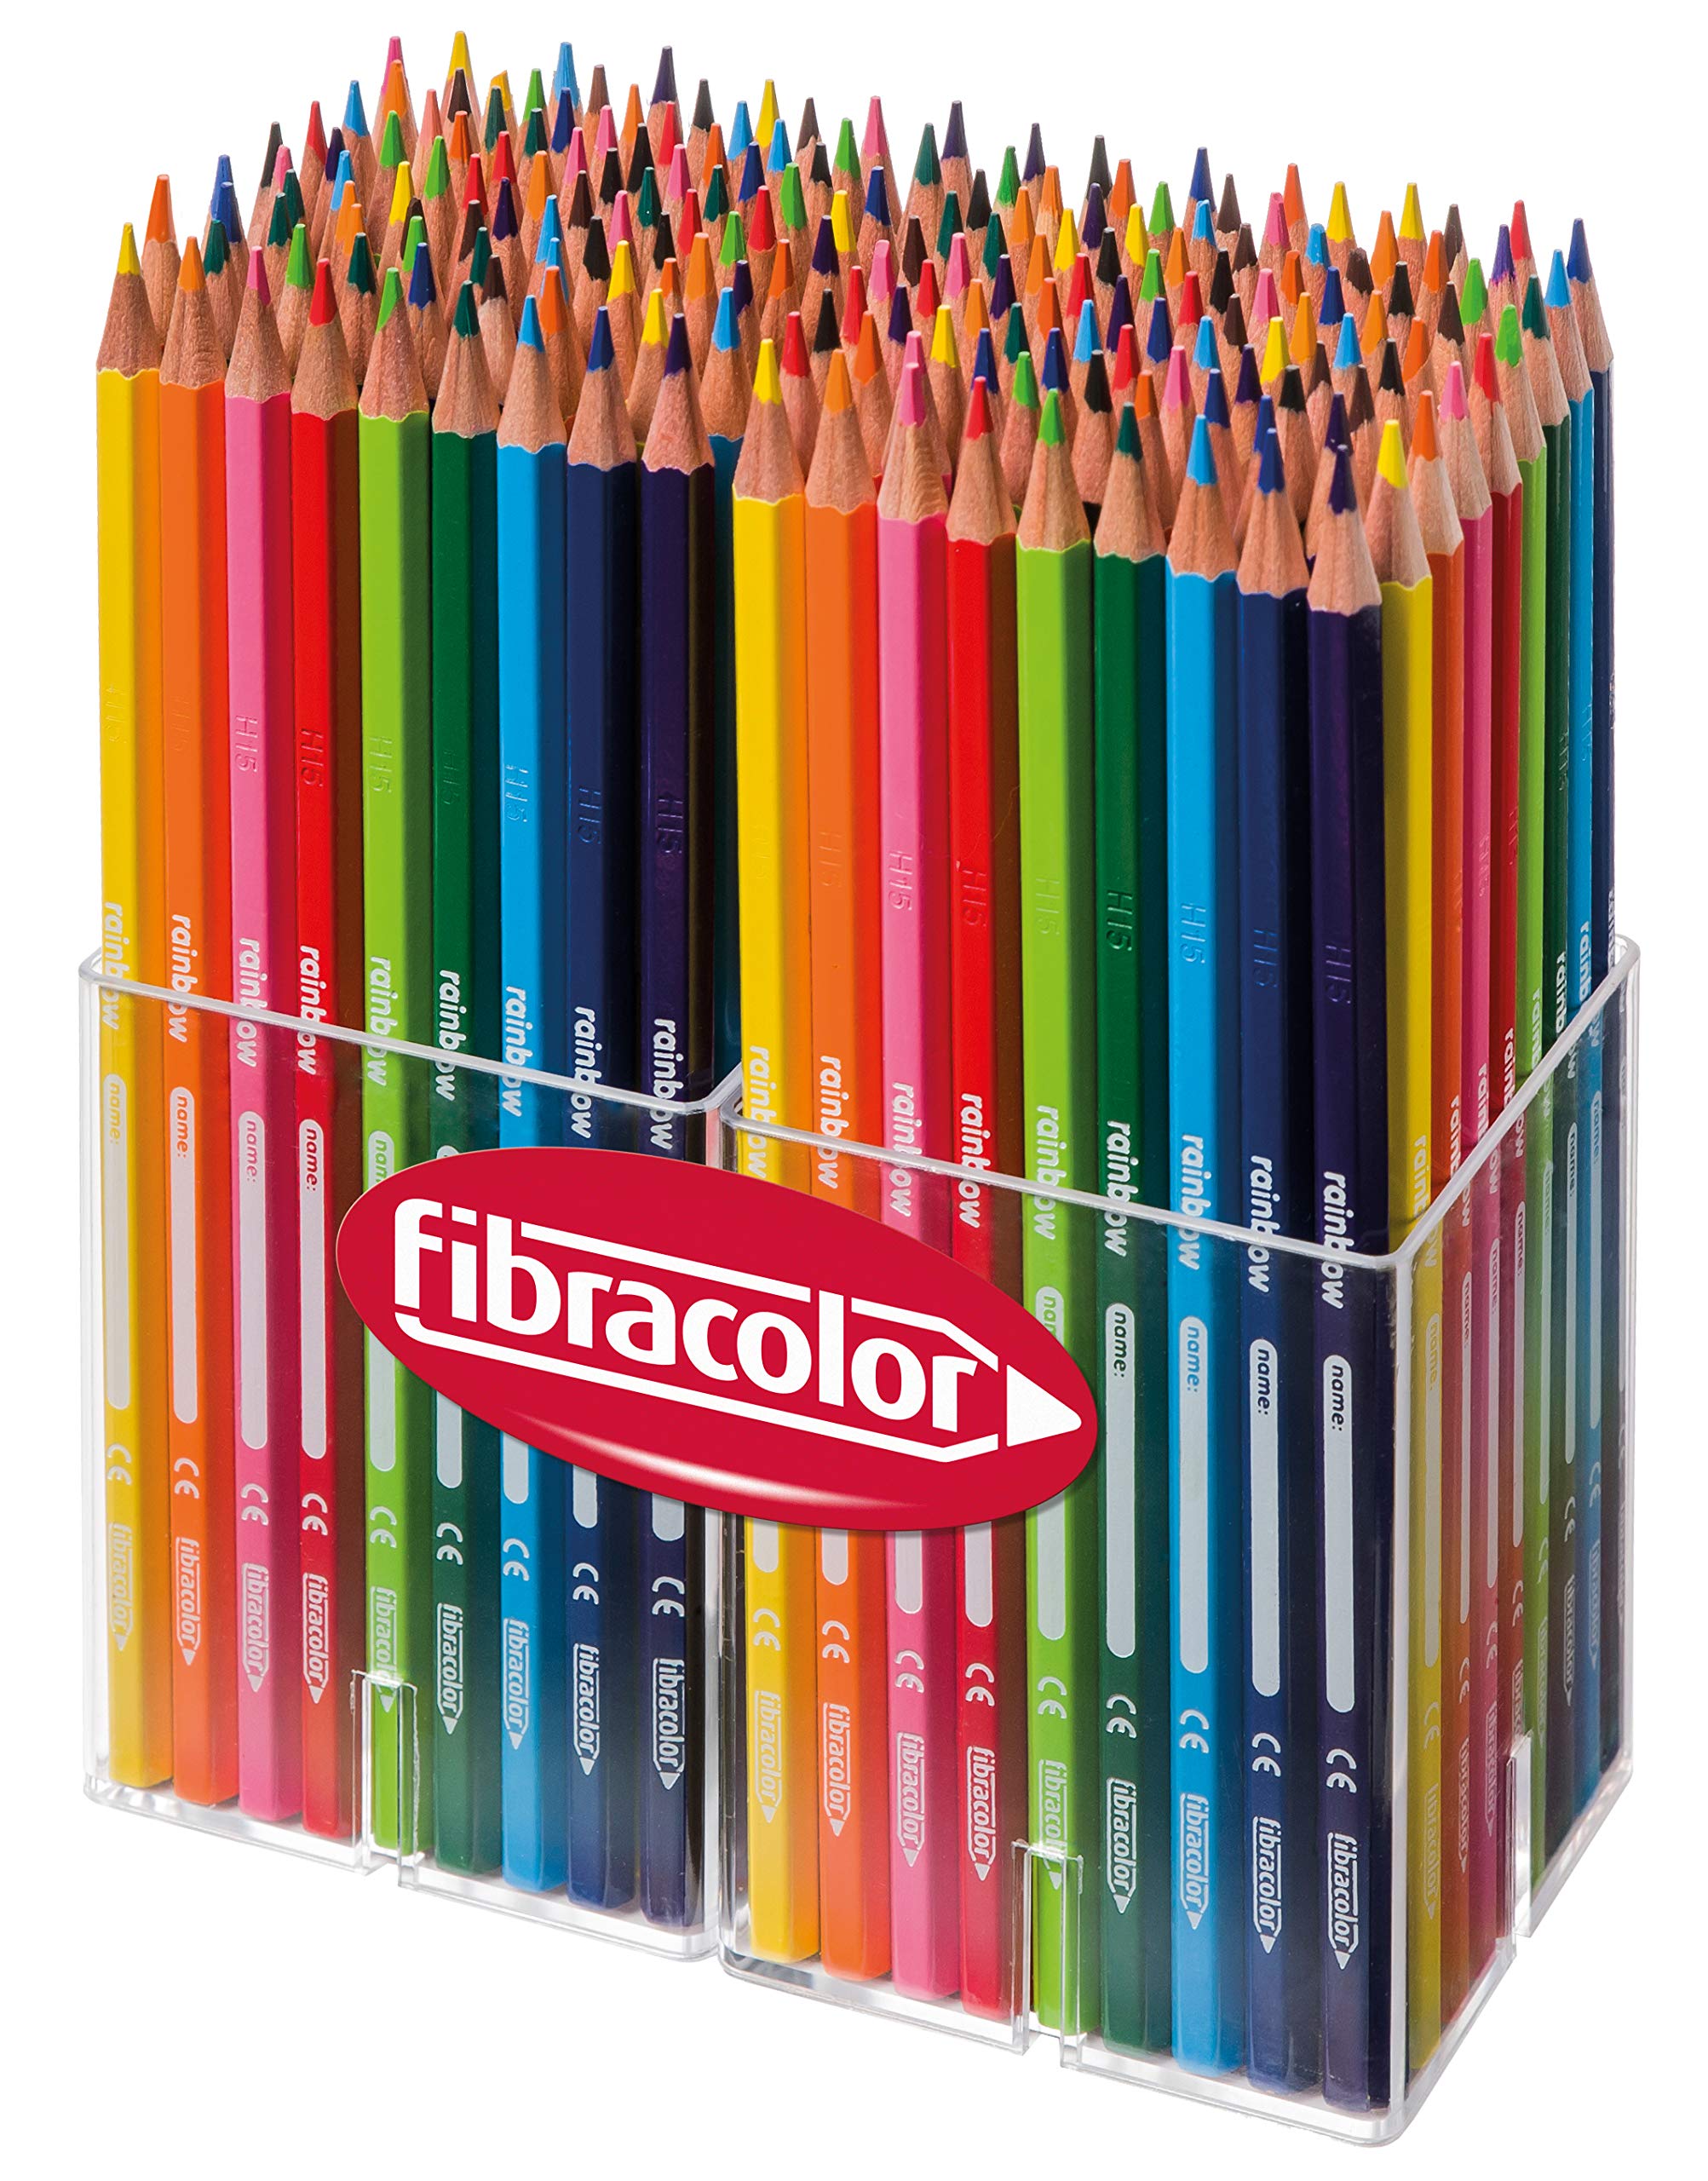 FIBRACOLOR Rainbow Multibox 192 farbige Holzstifte mit feiner Spitze